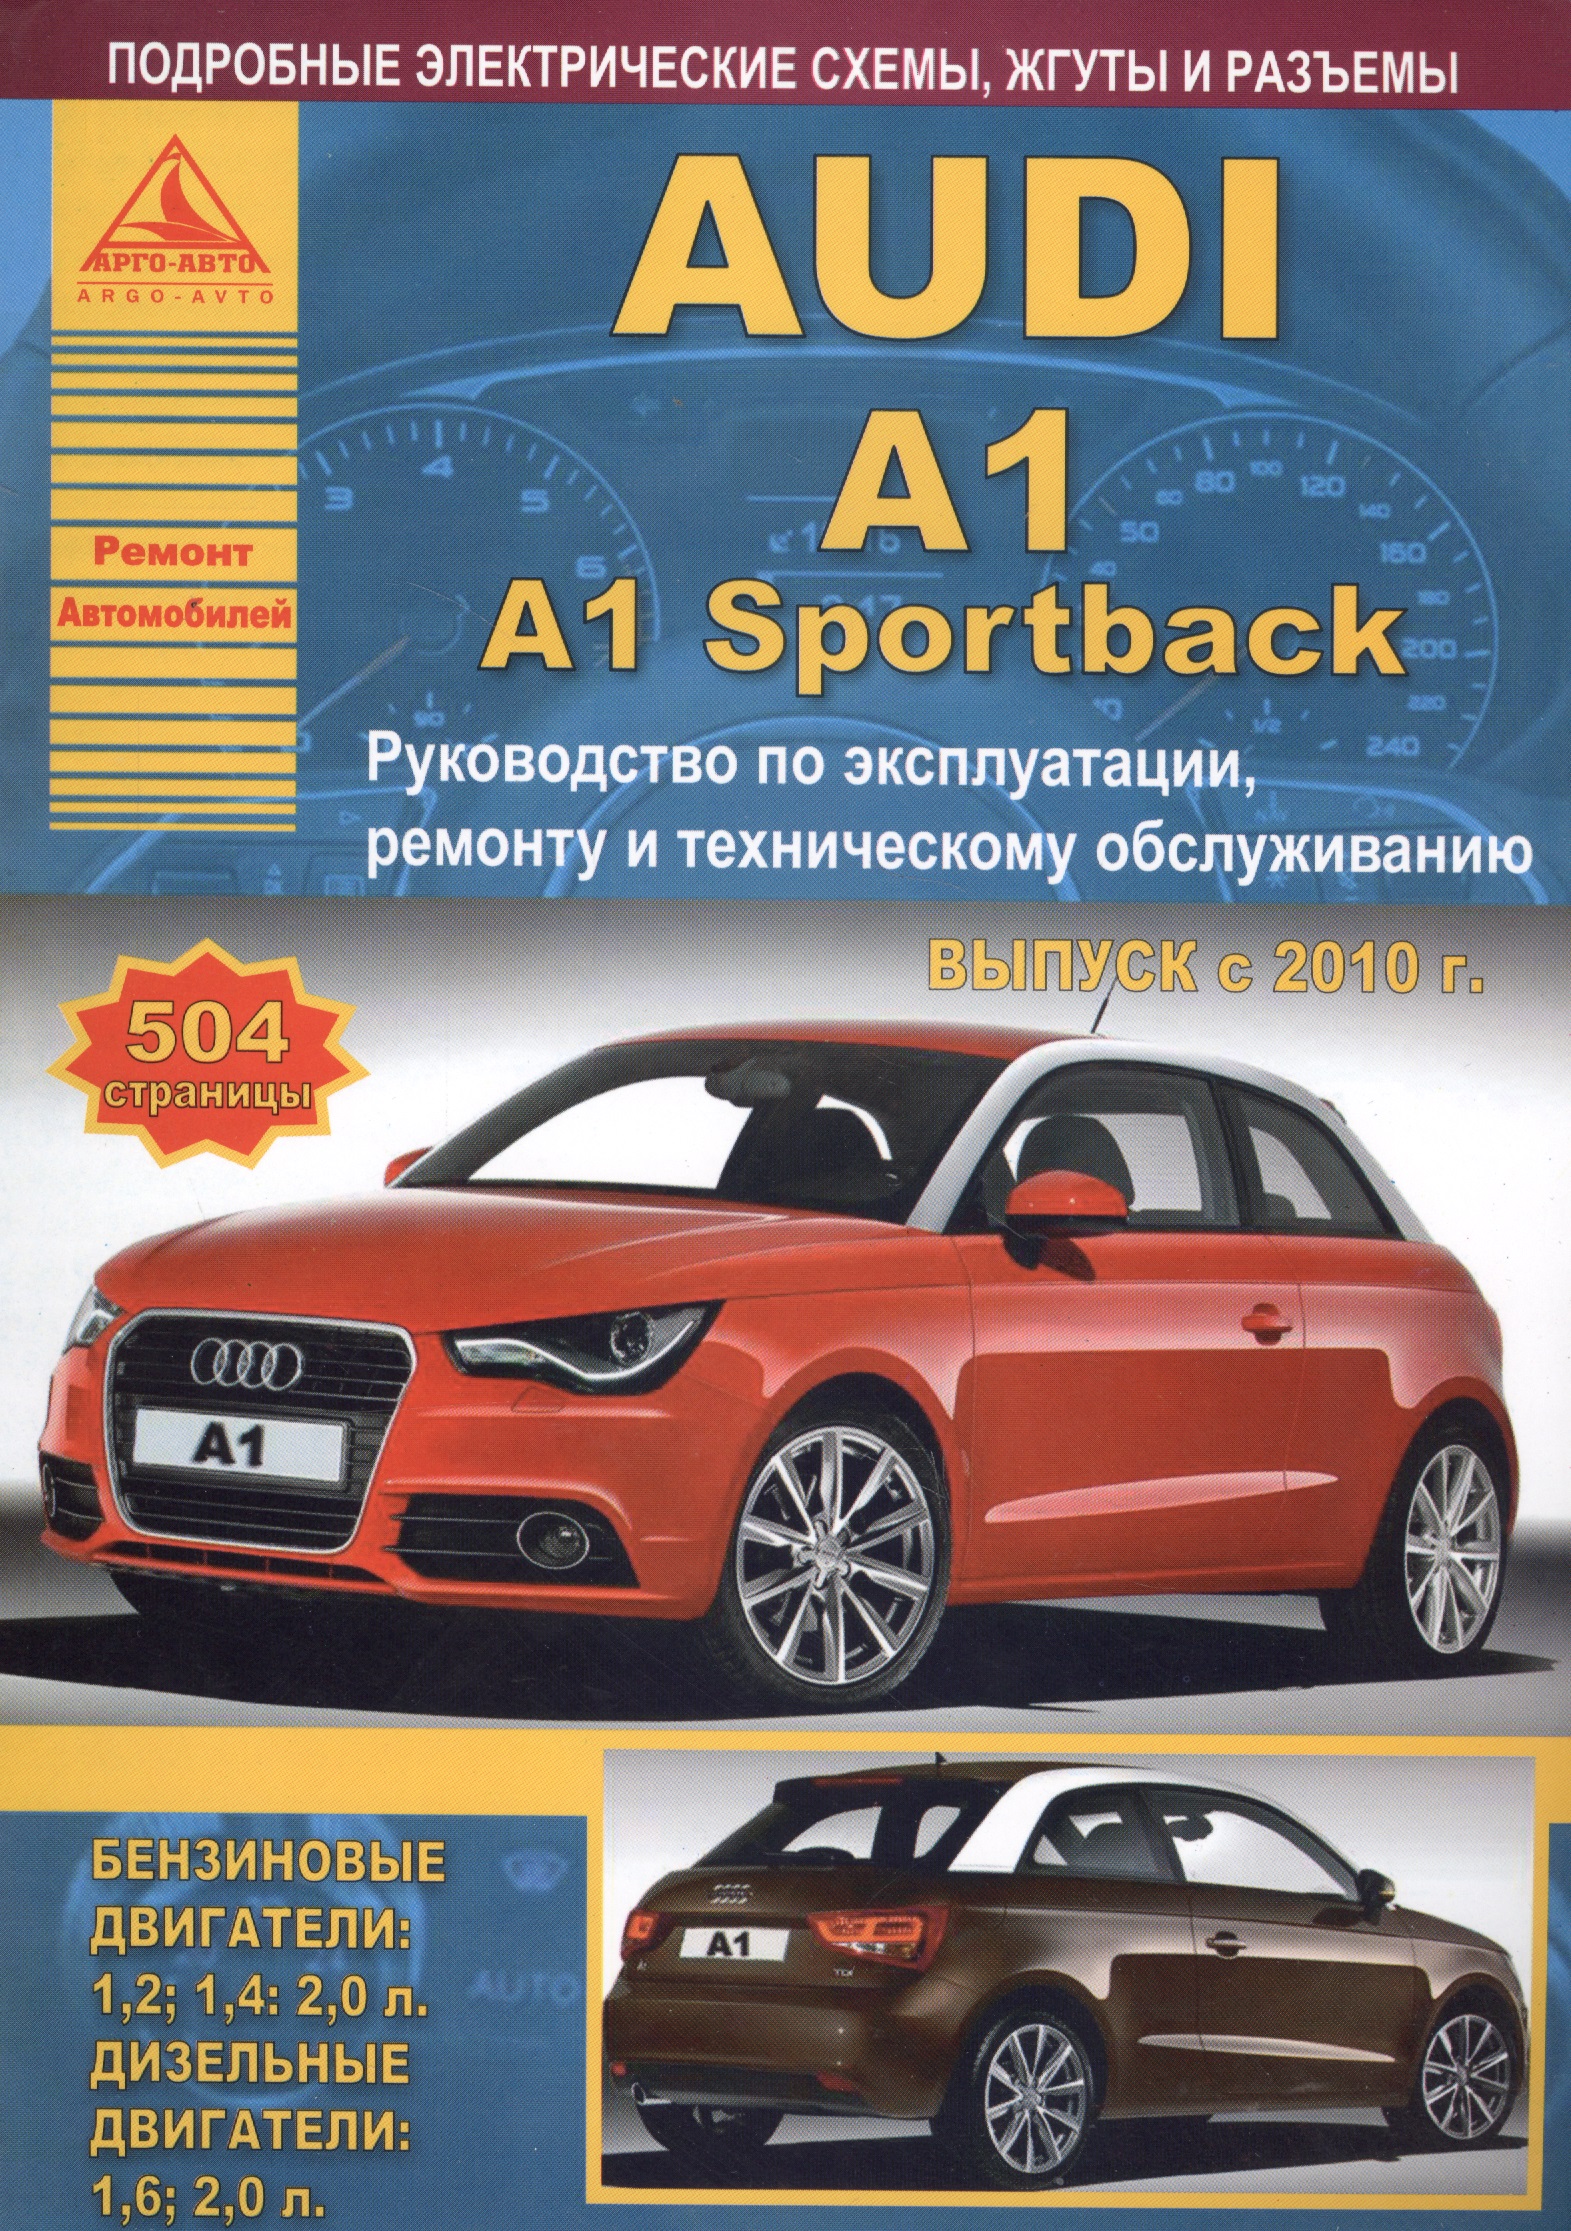 Автомобиль Audi A1 / A1 Sportback. Руководство по эксплуатации, ремонту и техническому обслуживанию. Выпуск с 2010 г. Бензиновые двигатели: 1,2, 1,4, 2,0 л. Дизельные двигатели: 1,6, 2,0 л.